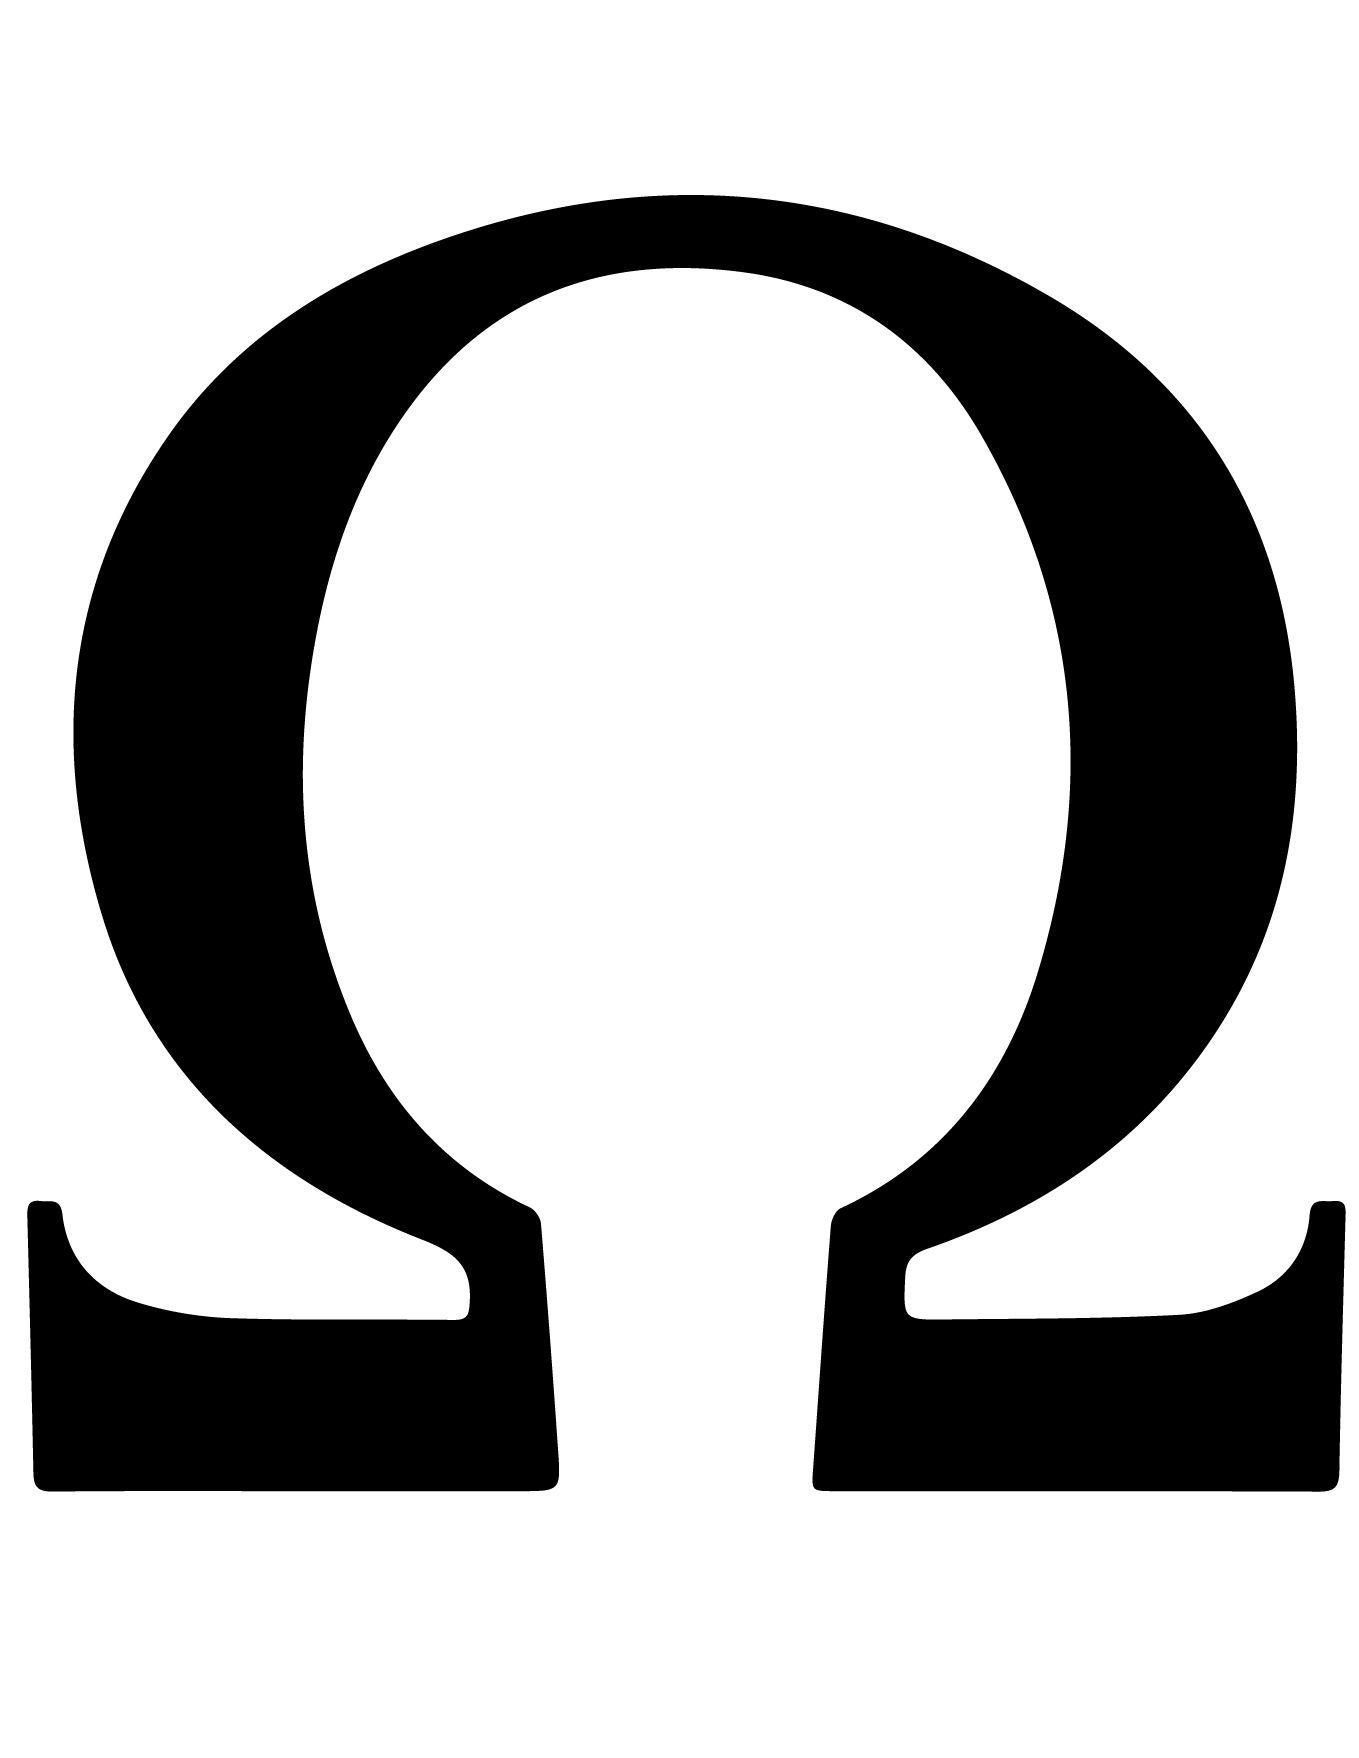 Omega Logo - Omega Symbol/Sign and Its Meaning - Mythologian